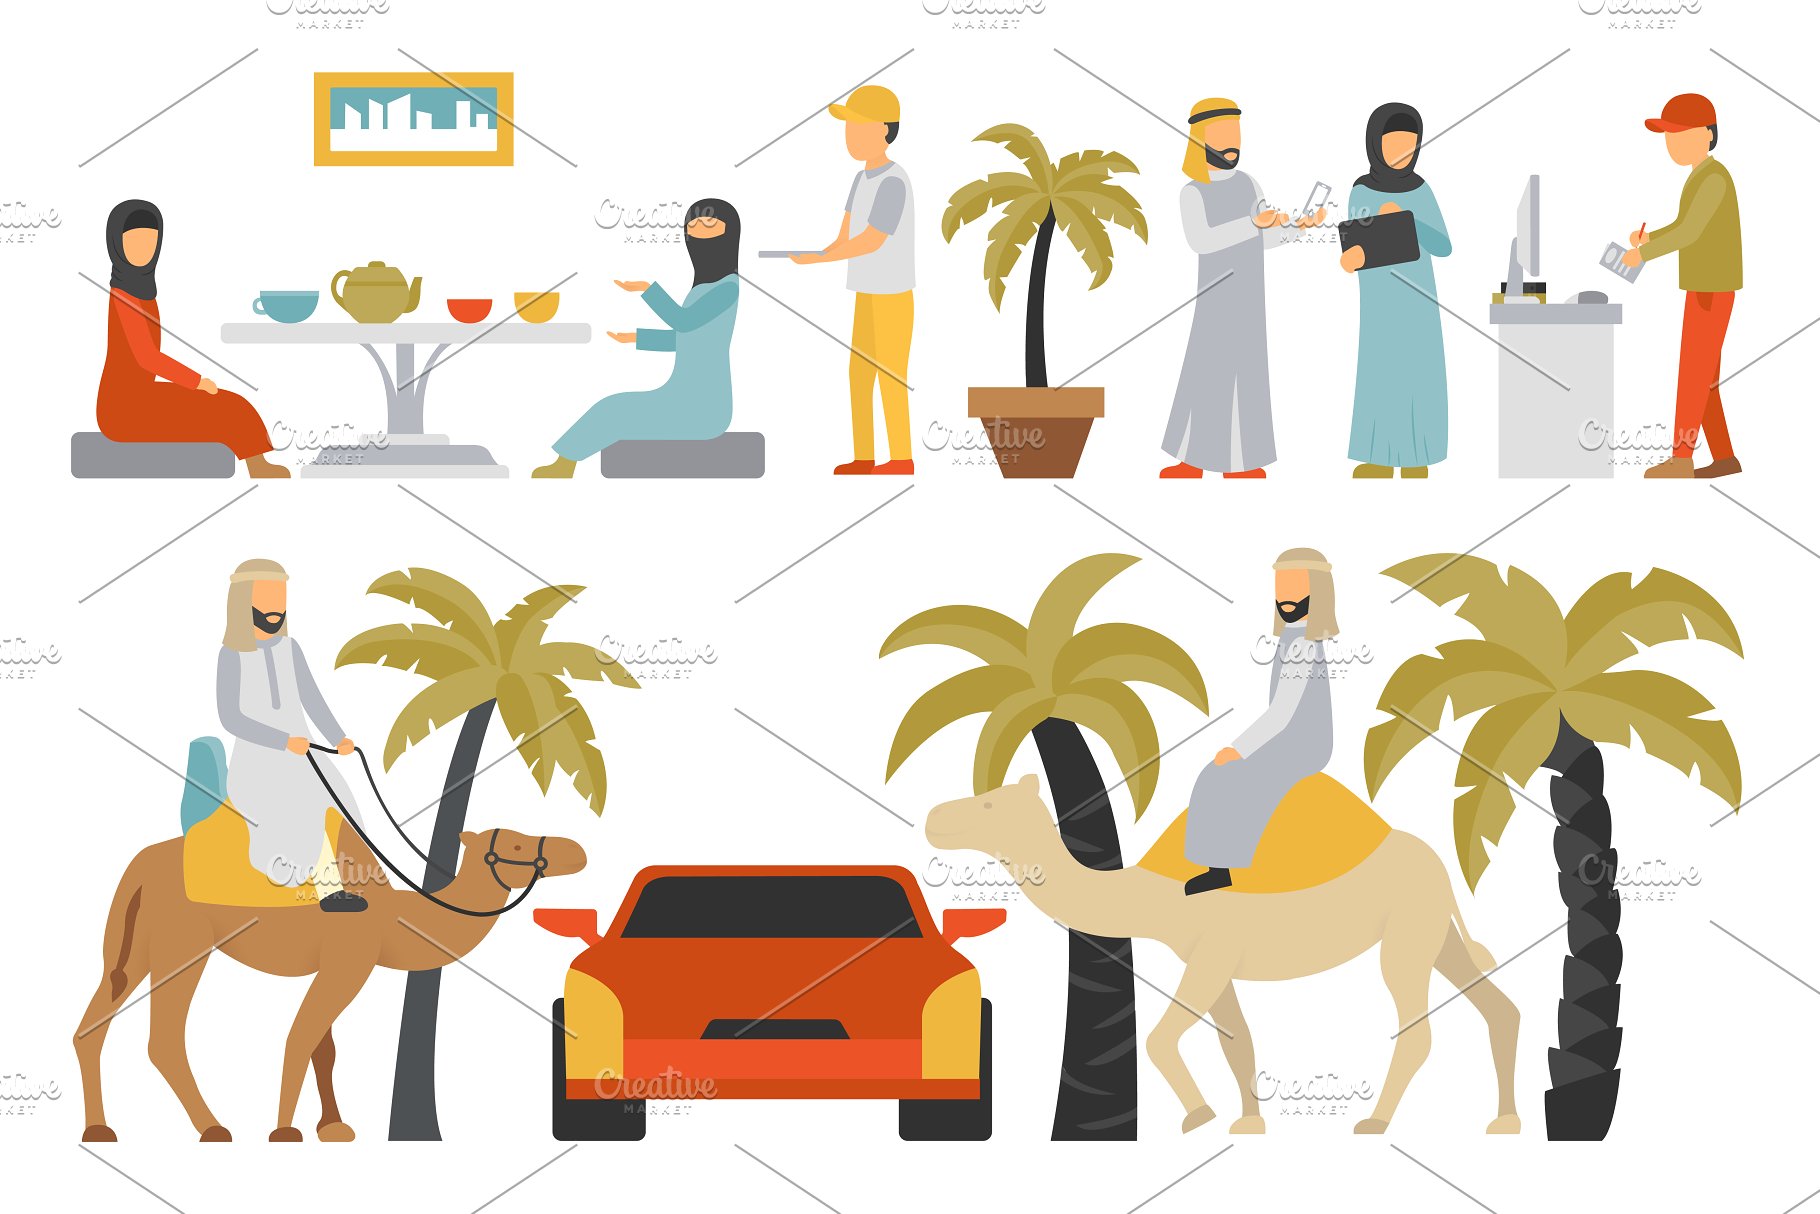 迪拜人物风情扁平化设计插画 Dubai – flat people set插图(12)